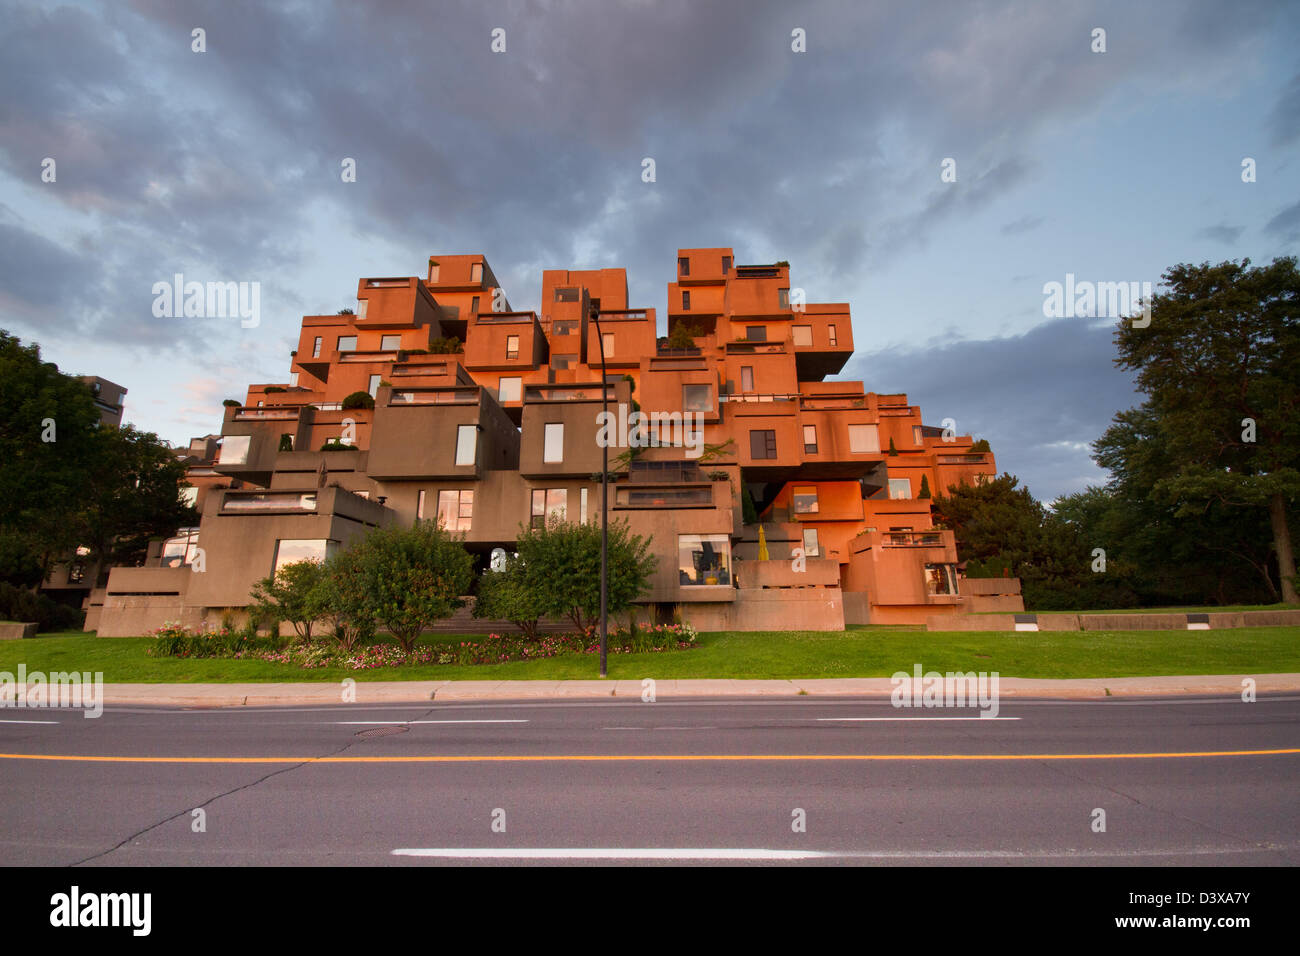 Habitat 67 ist eine Modell-Gemeinschaft und Wohnanlage in Montreal, Kanada vom Architekten Moshe Safdie entworfen. Stockfoto